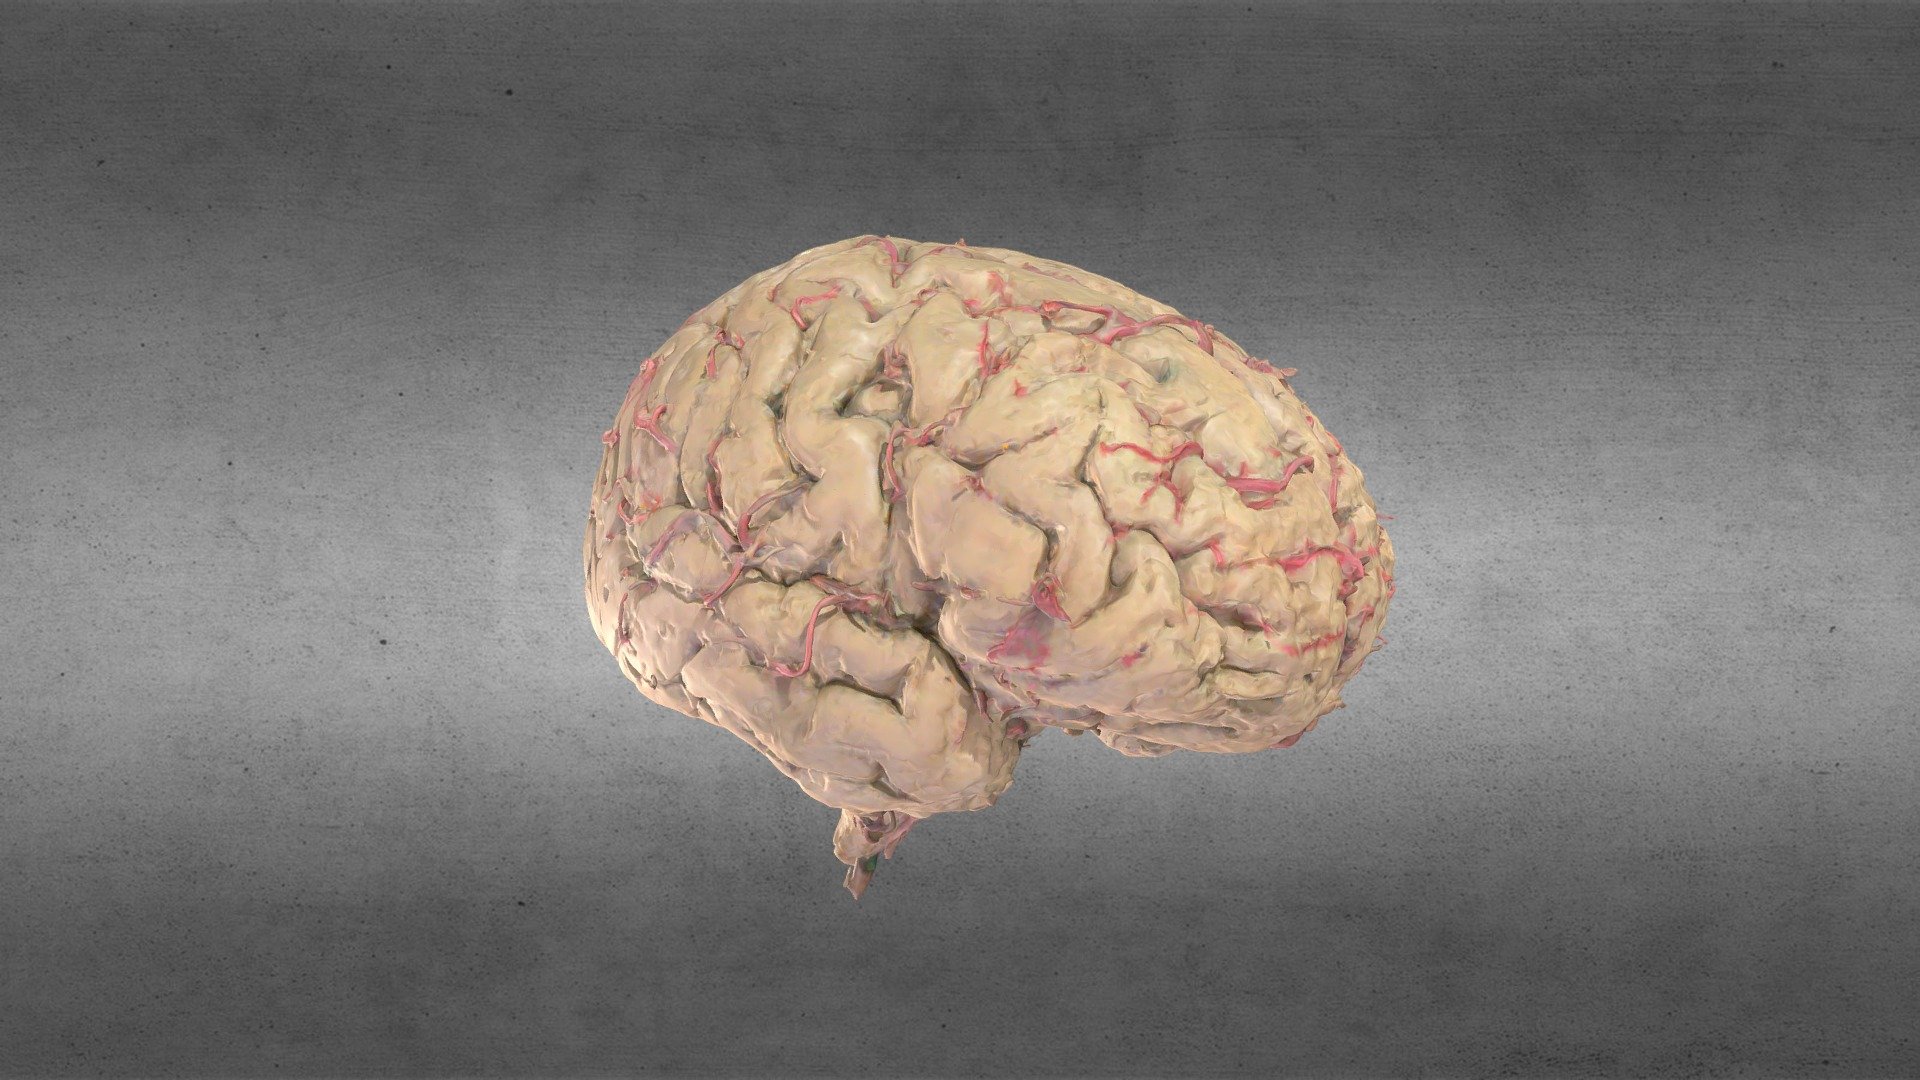 Cerebro/Brain